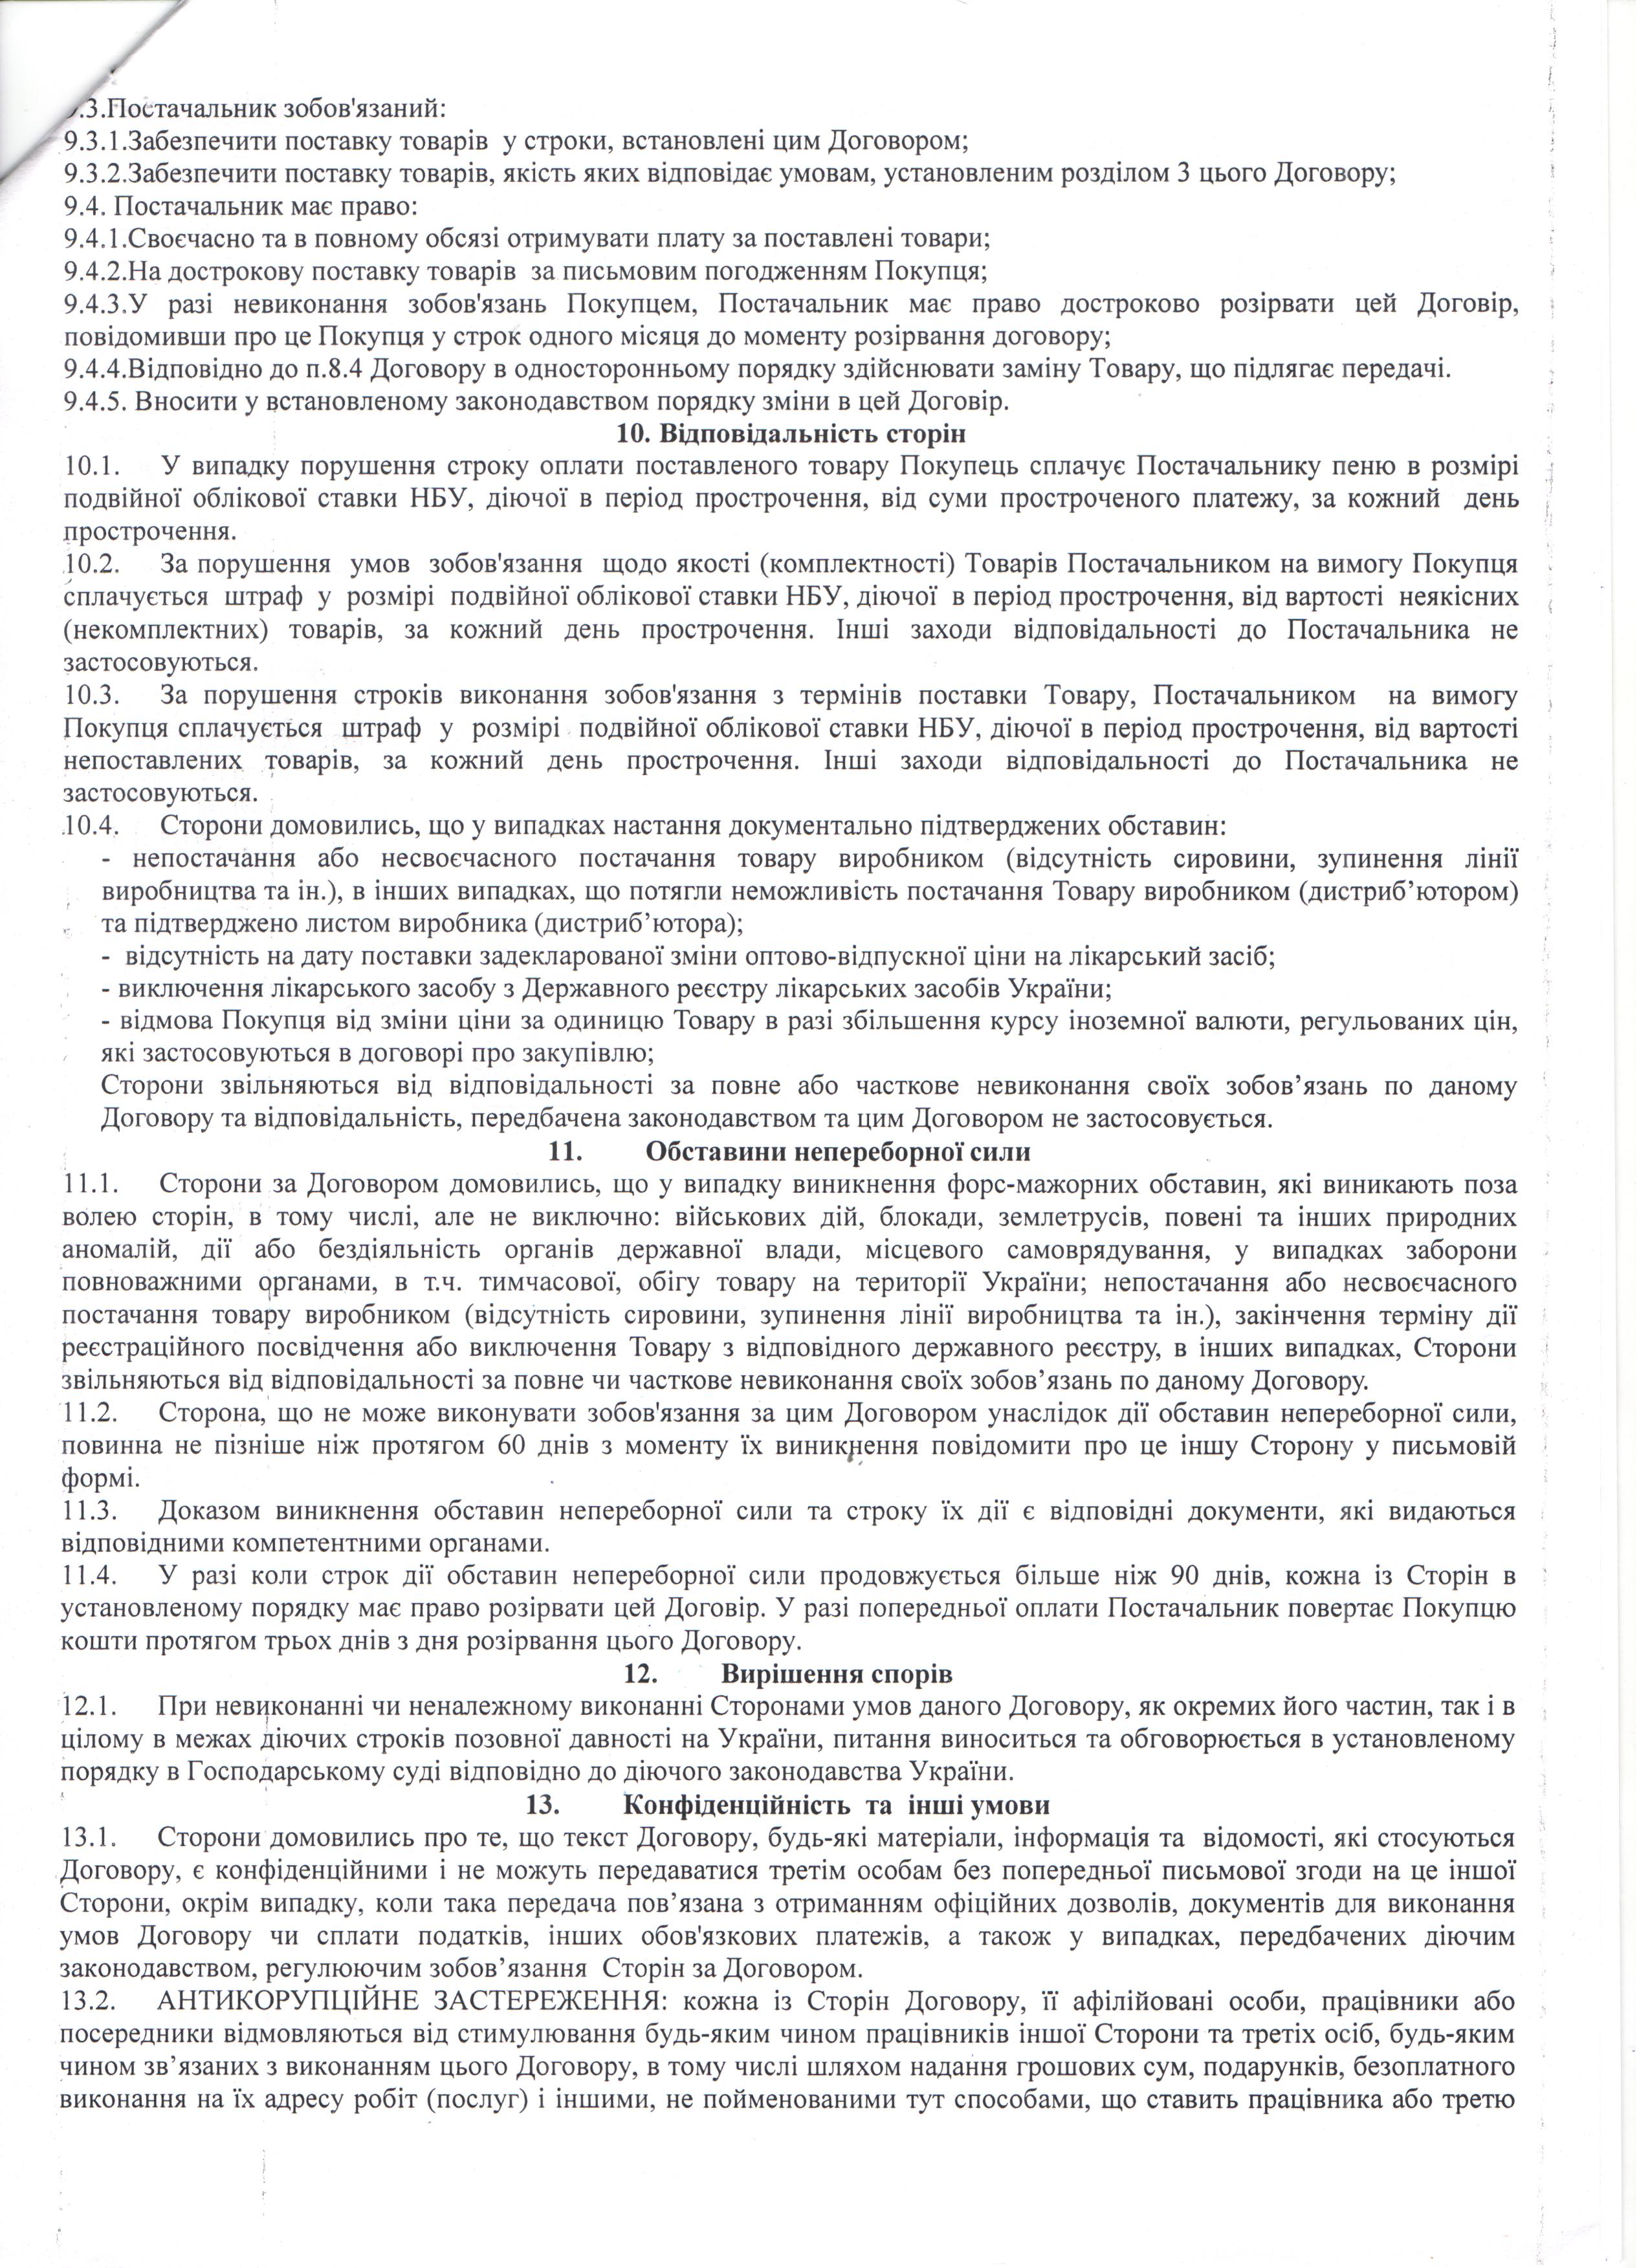 Договір №120 (3) від 17.09.2021 р.